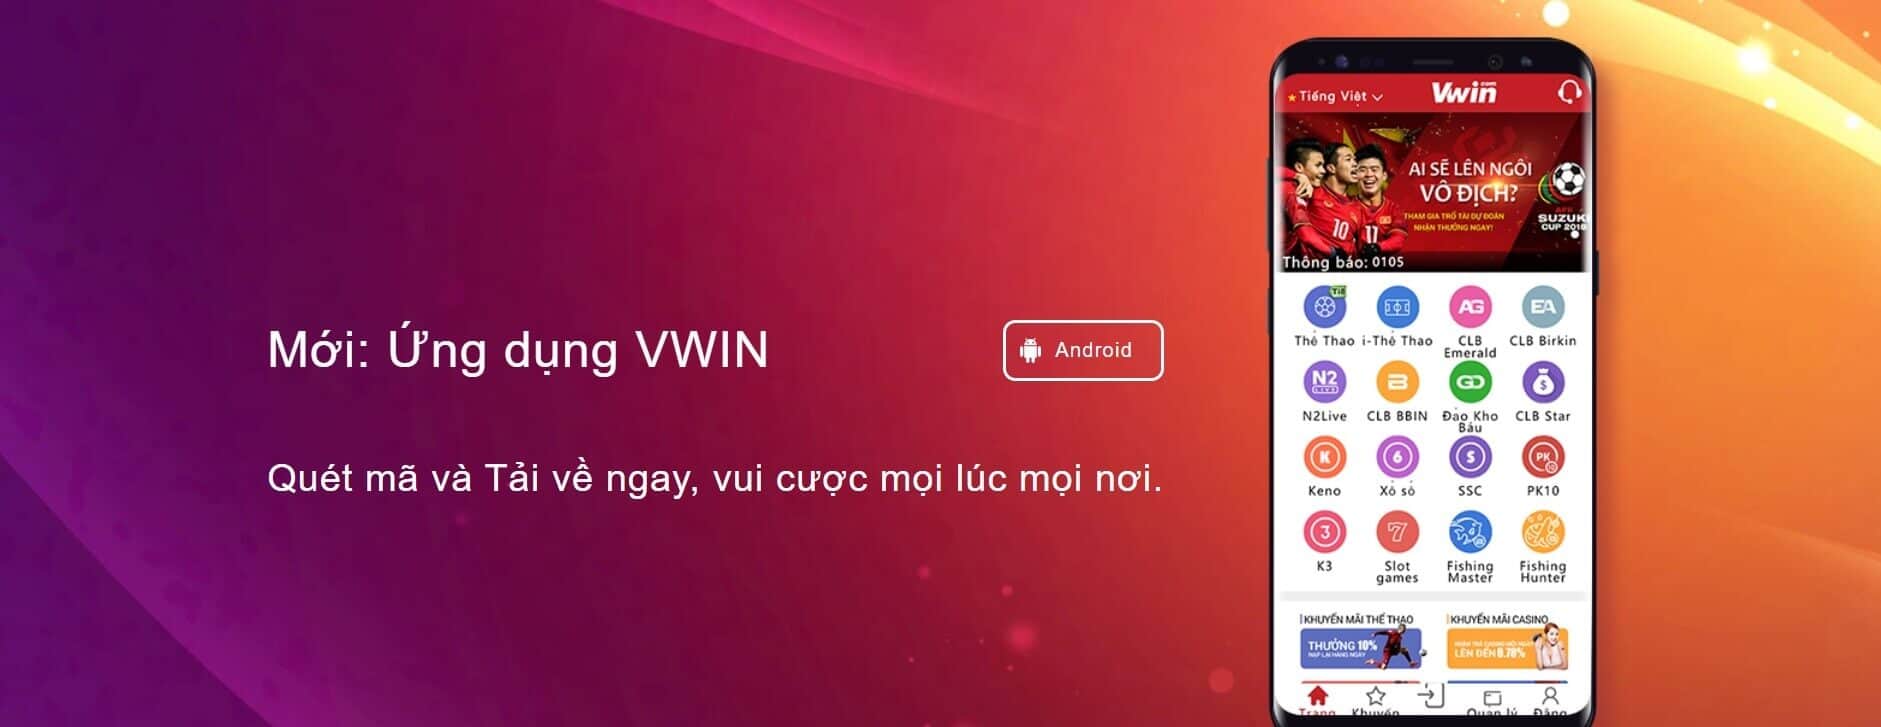 Ứng dụng Vwin trên hệ điều hành Android và iOS